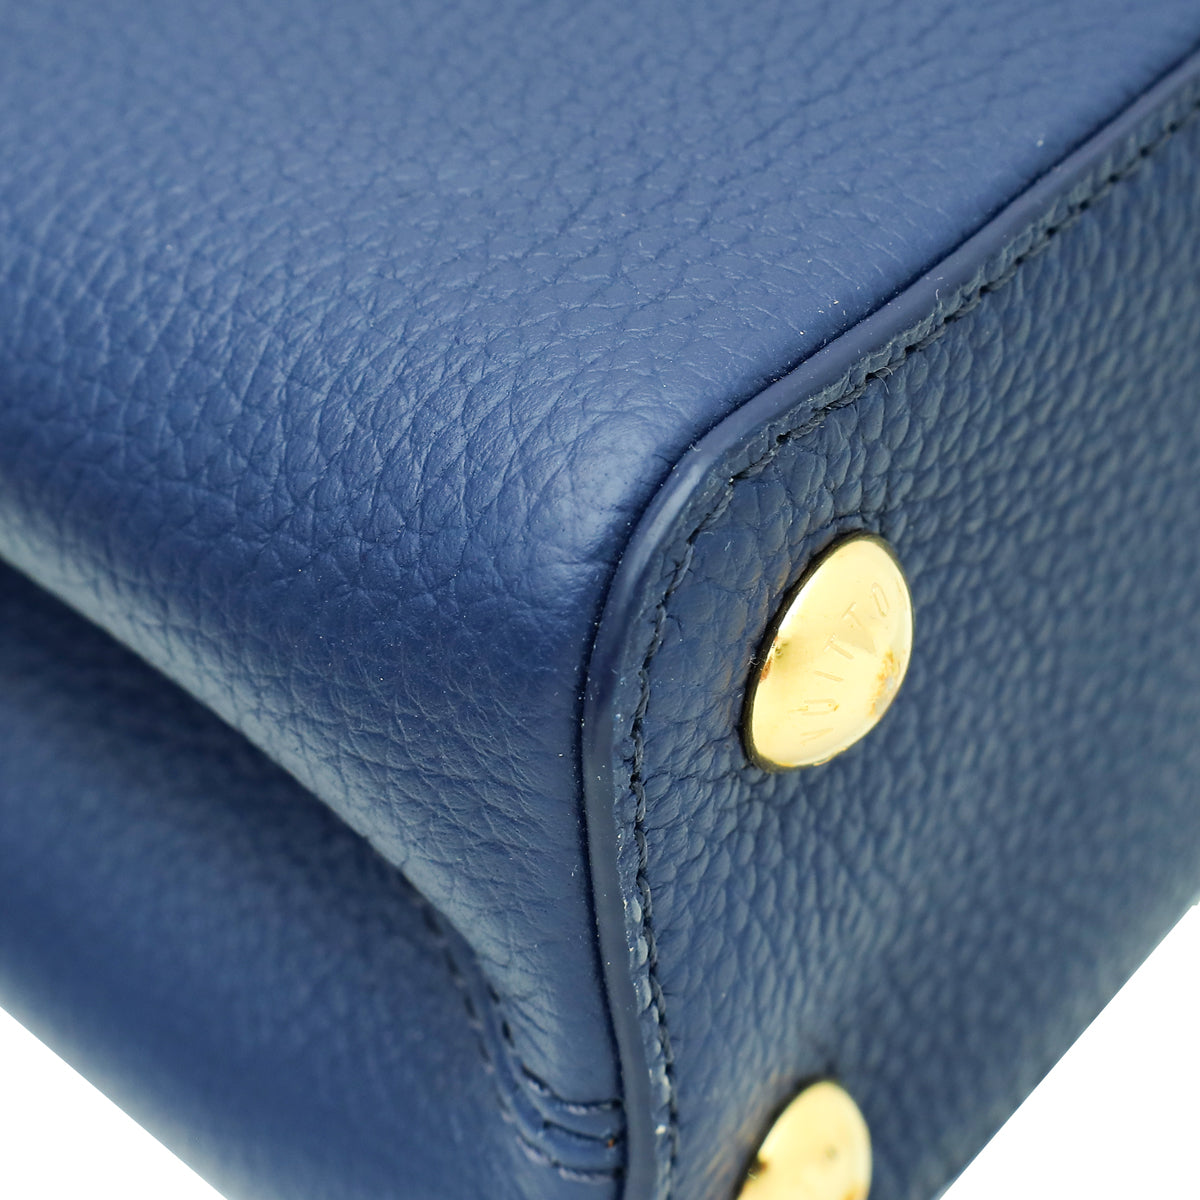 Louis Vuitton Tricolor Capucines BB Studded Bag